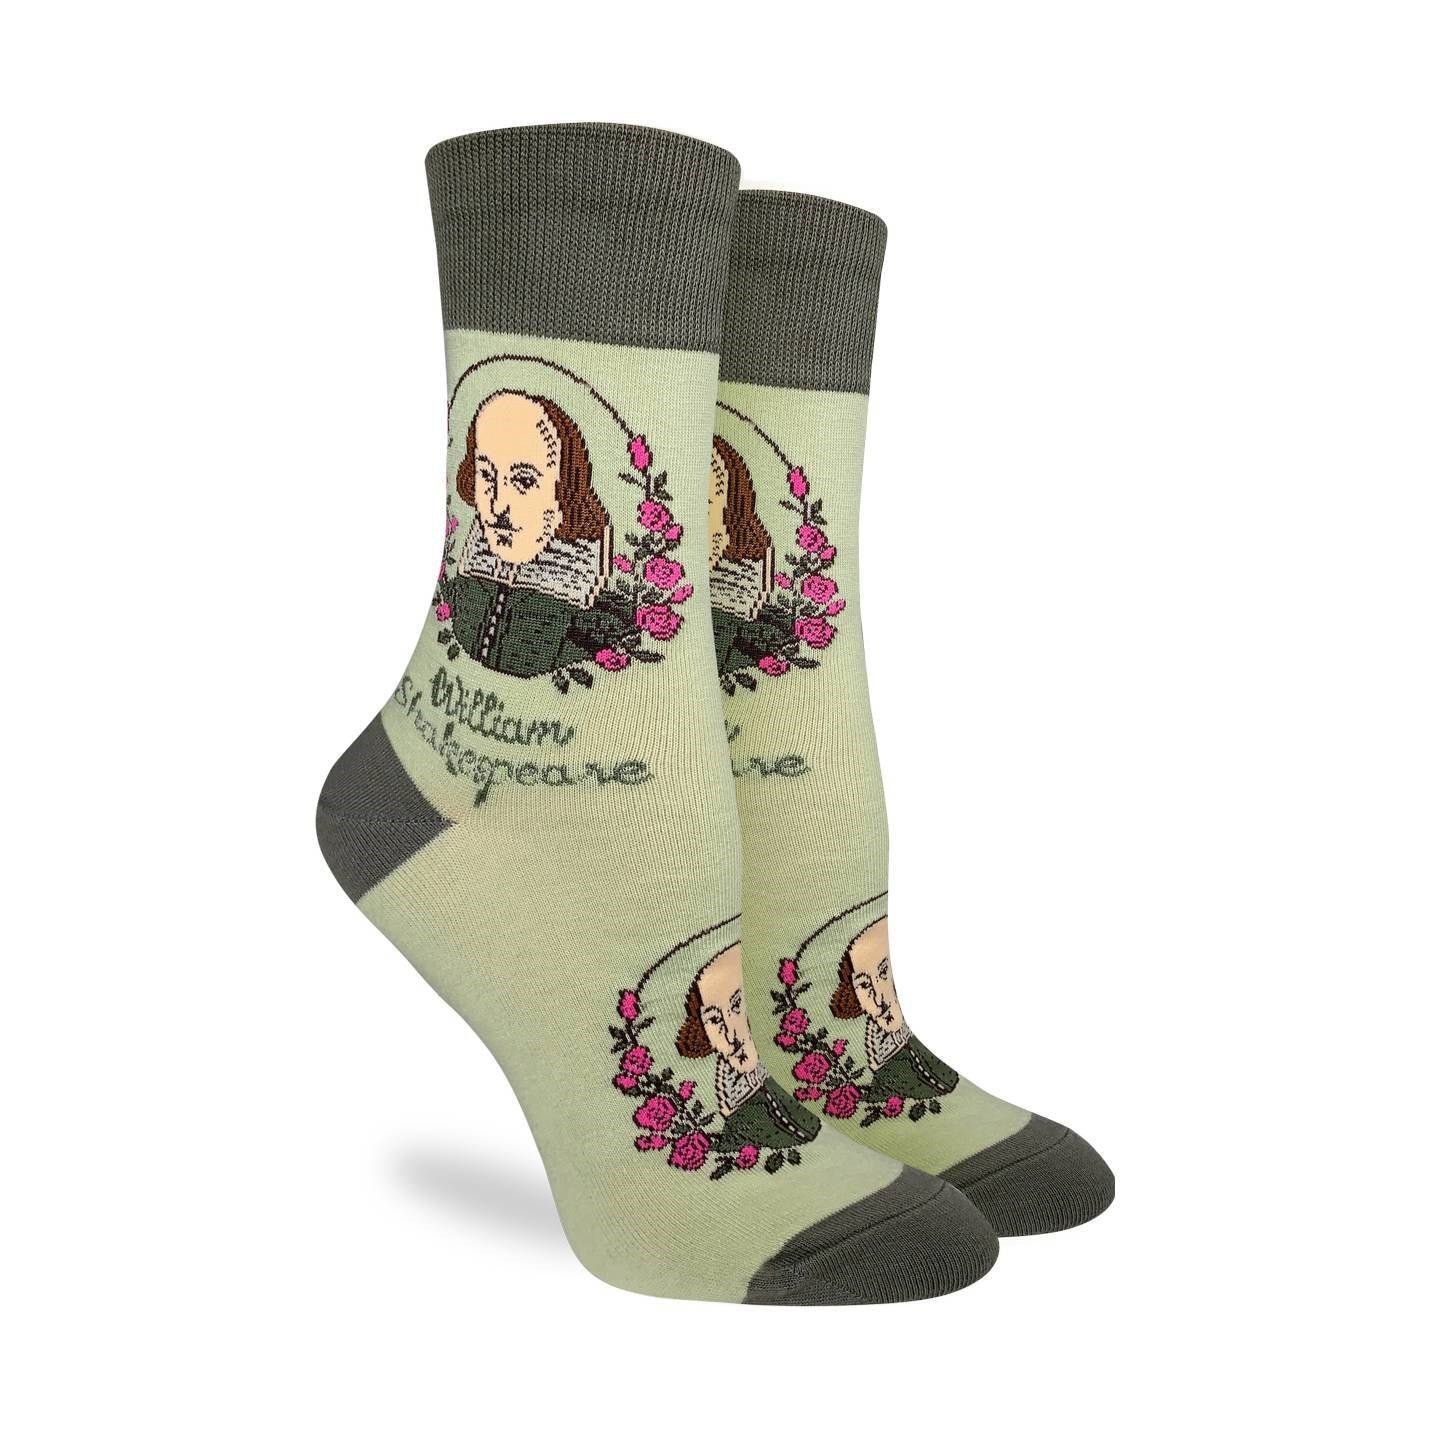 William Shakespeare Good Luck Socks